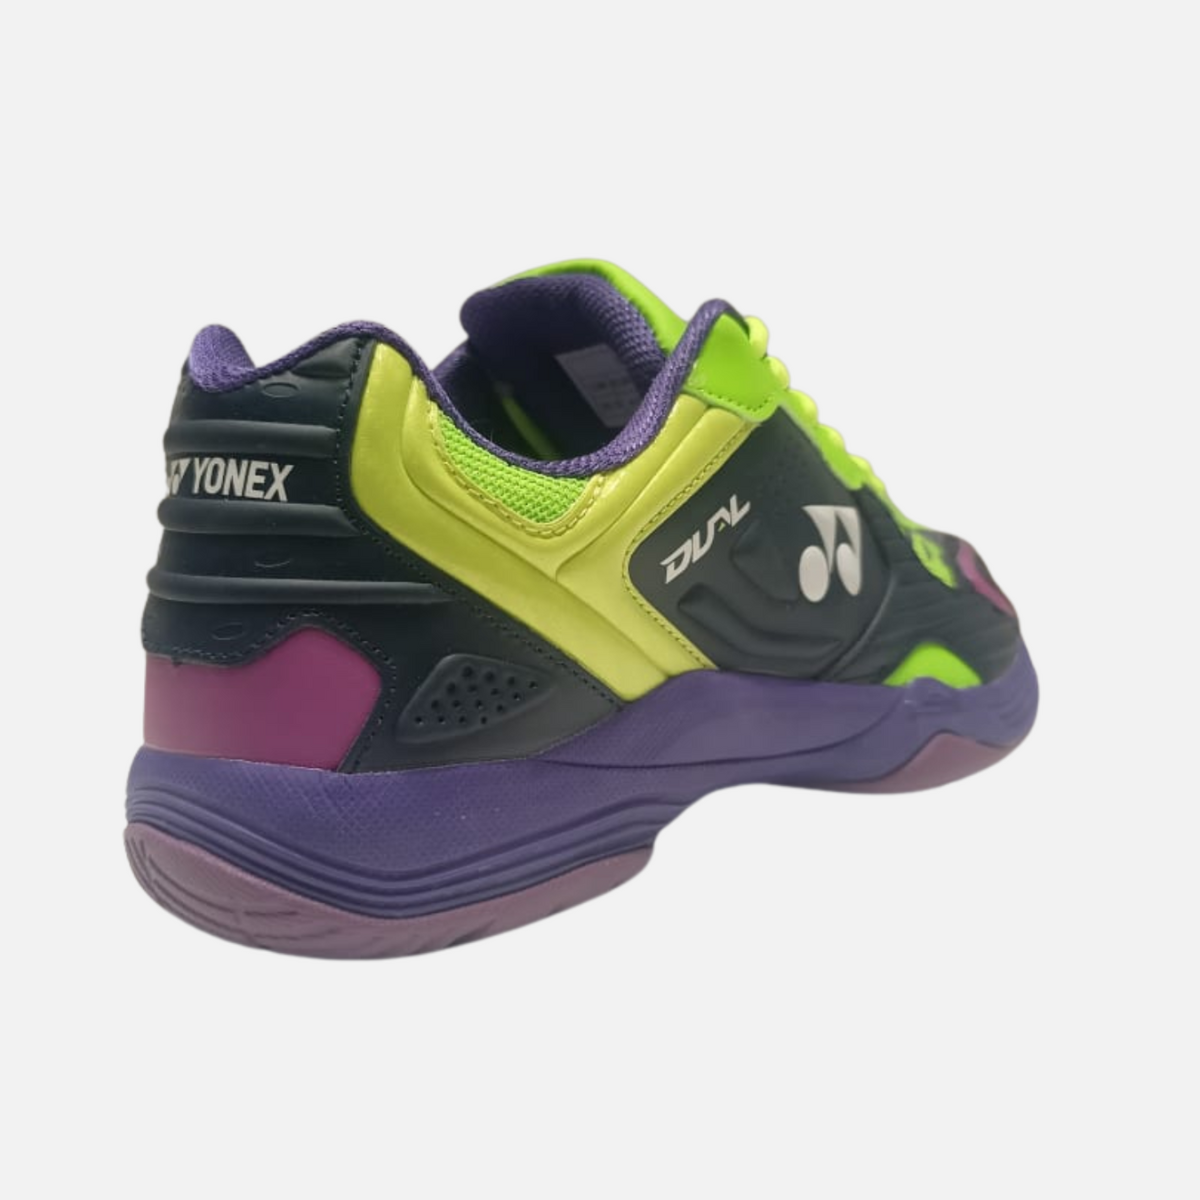 Yonex Mens Dual Badminton Shoes -Maritime blue/Neon Line/Electric Purple